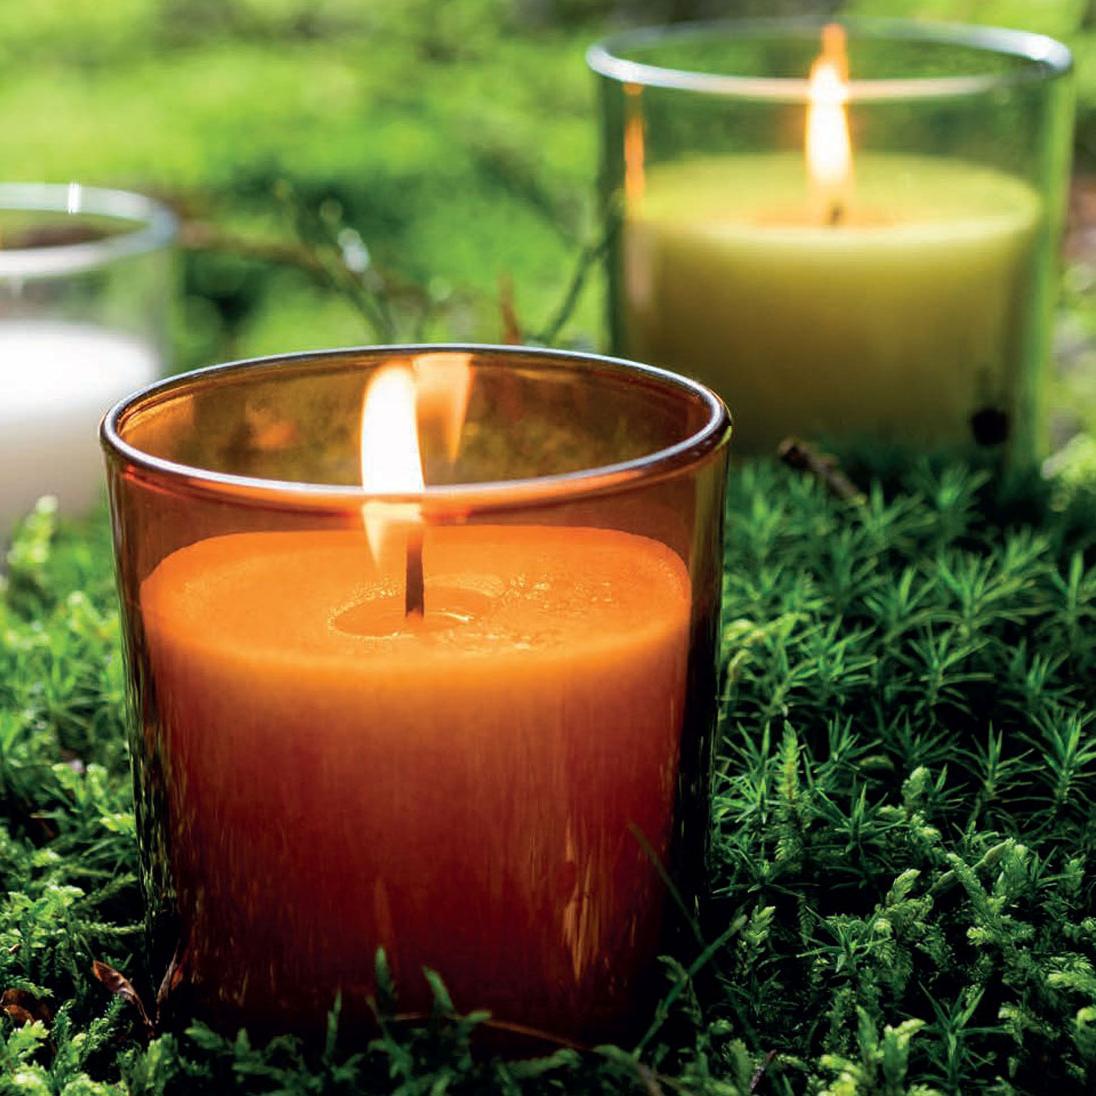 Nahaufnahme einer brennenden Stearin Kerze in einem orangefarbenen Glas. Im Hintergrund erkennt man noch zwei weitere Kerzen, eine mit grünem Glas und eine mit klarem. Die Gläser stehen auf dichtem, grünem Moos.